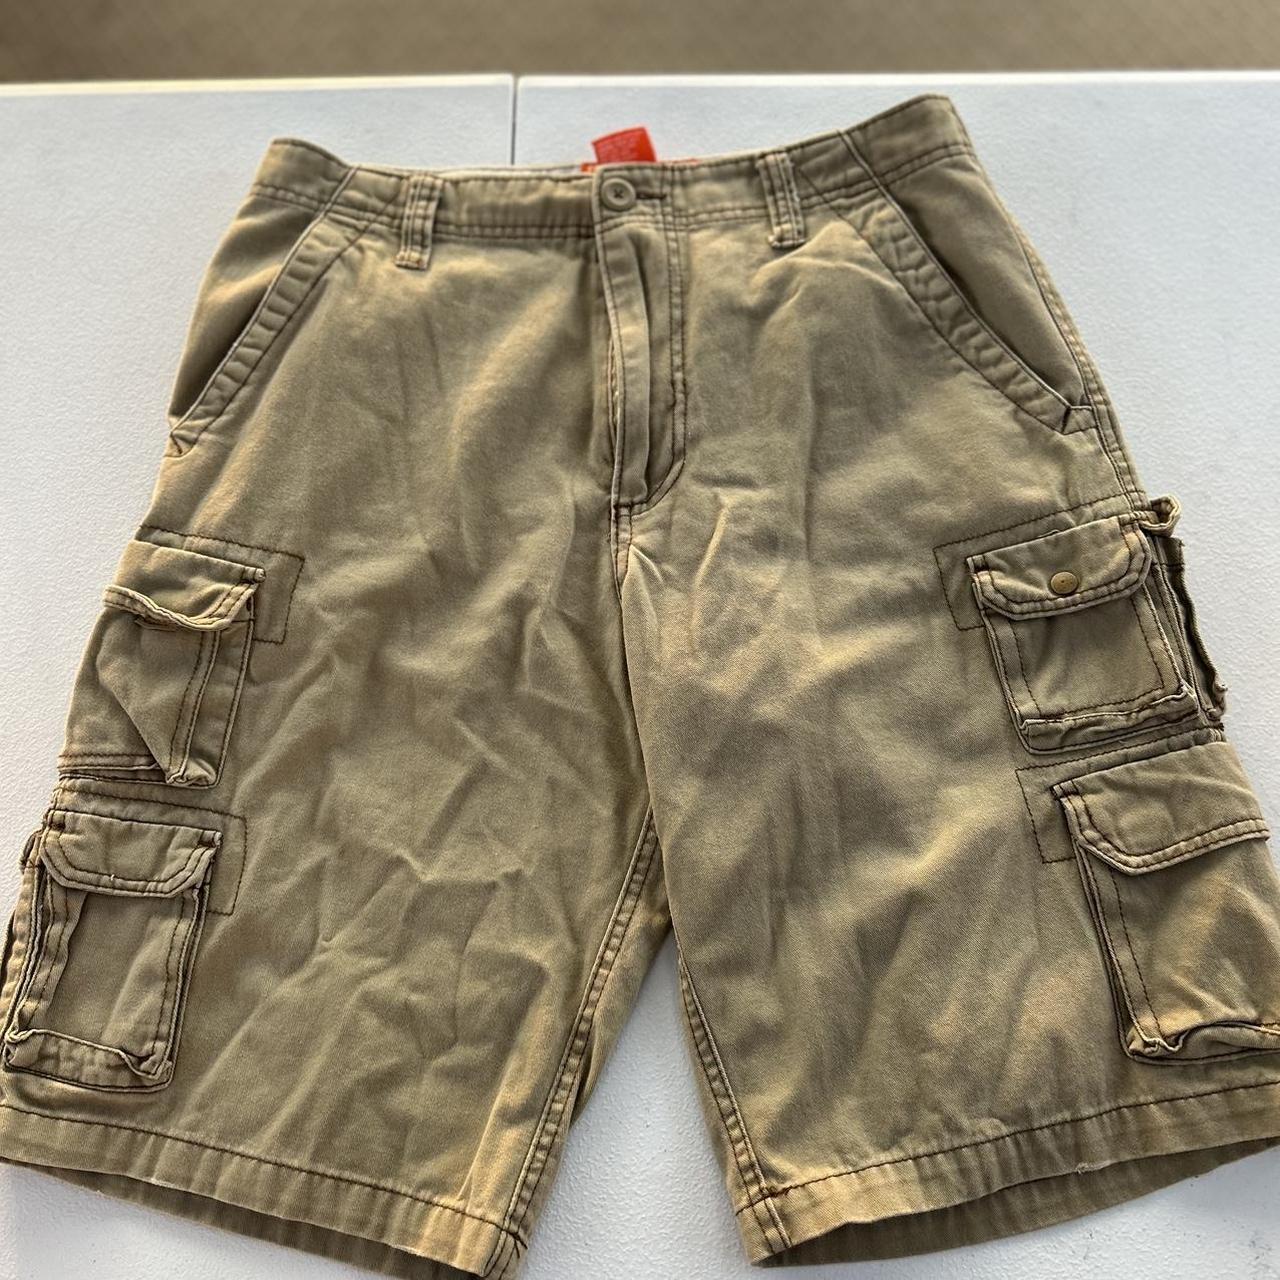 Cargo shorts/ jorts Olive Light green beige. Vintage... - Depop